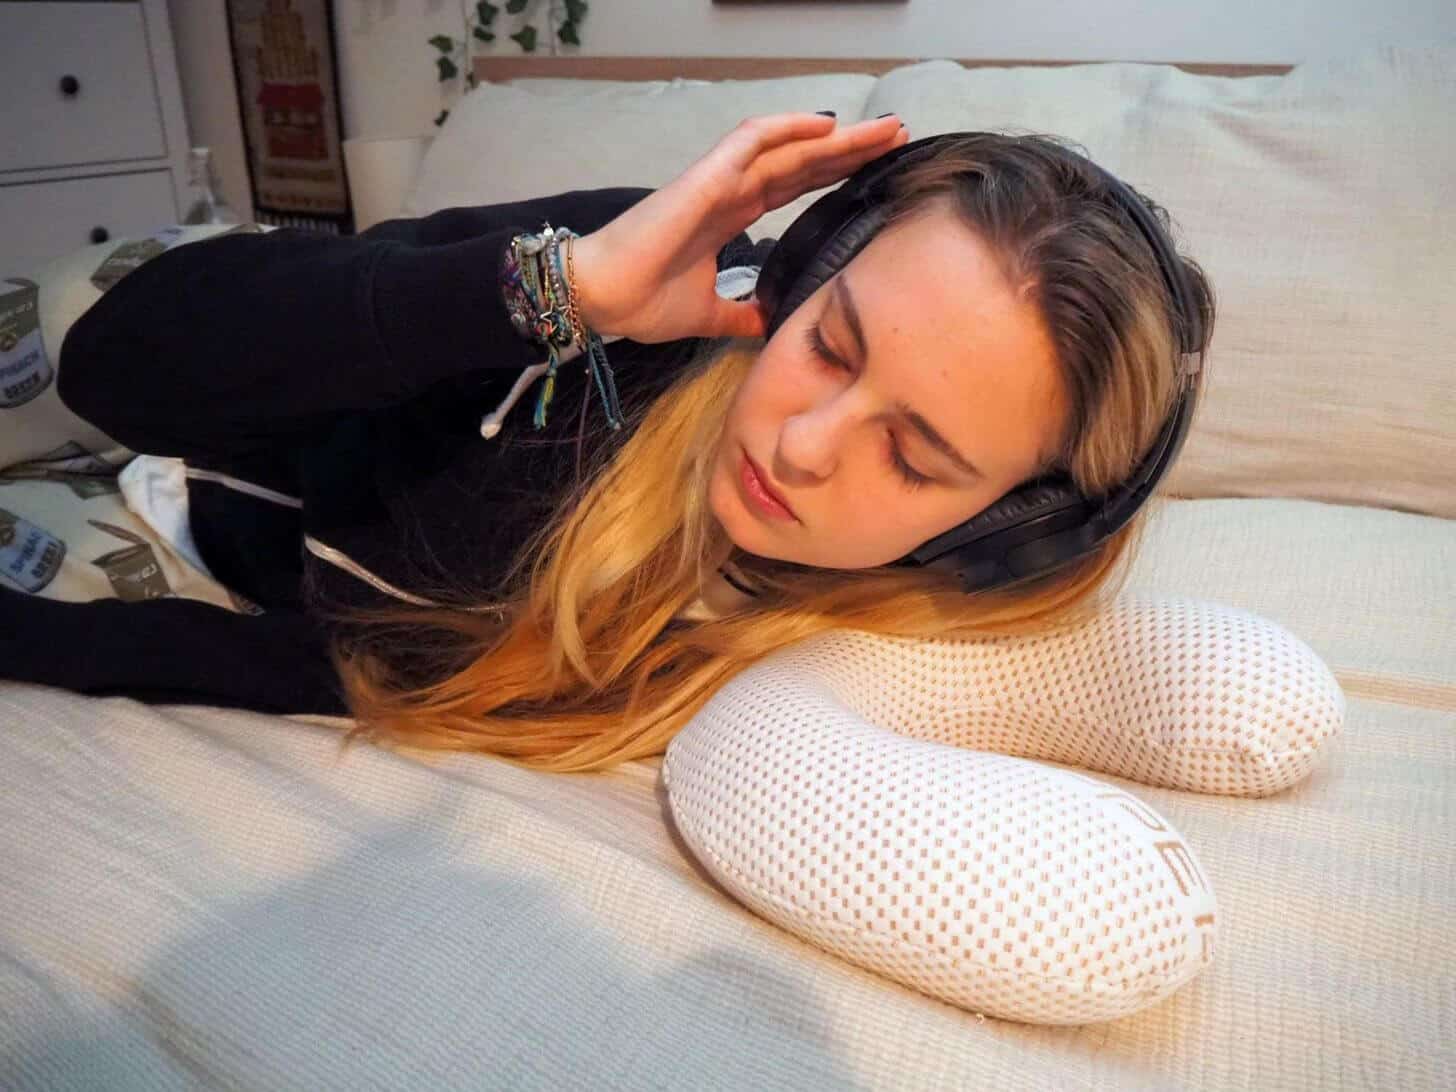 đeo tai nghe khi ngủ có tốt không